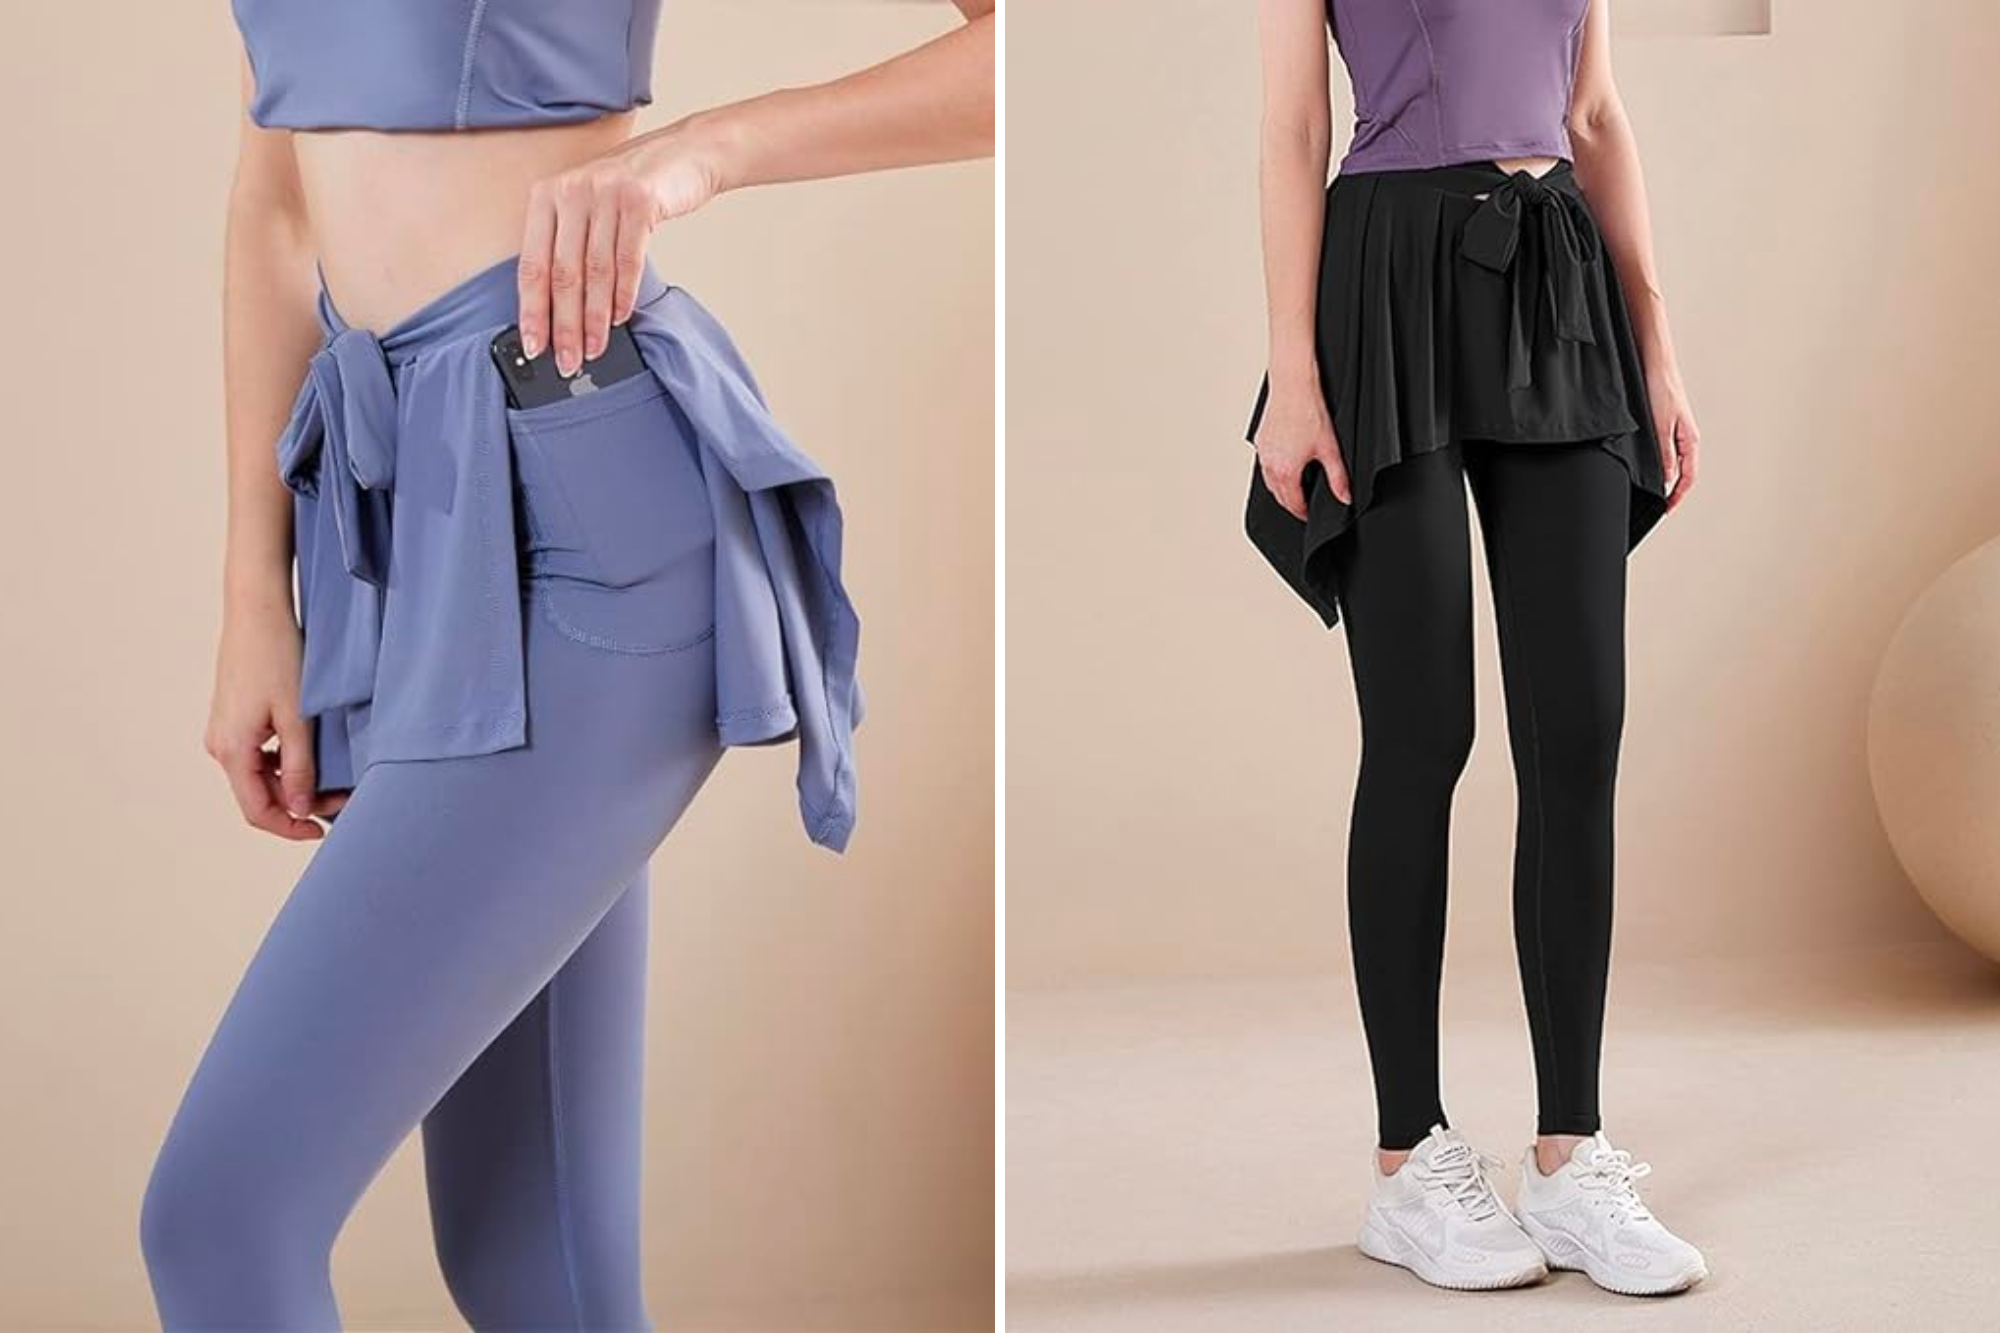 Athletic Skirt with full length Leggings Tennis Skirted Legging for Wo –  Anivivo